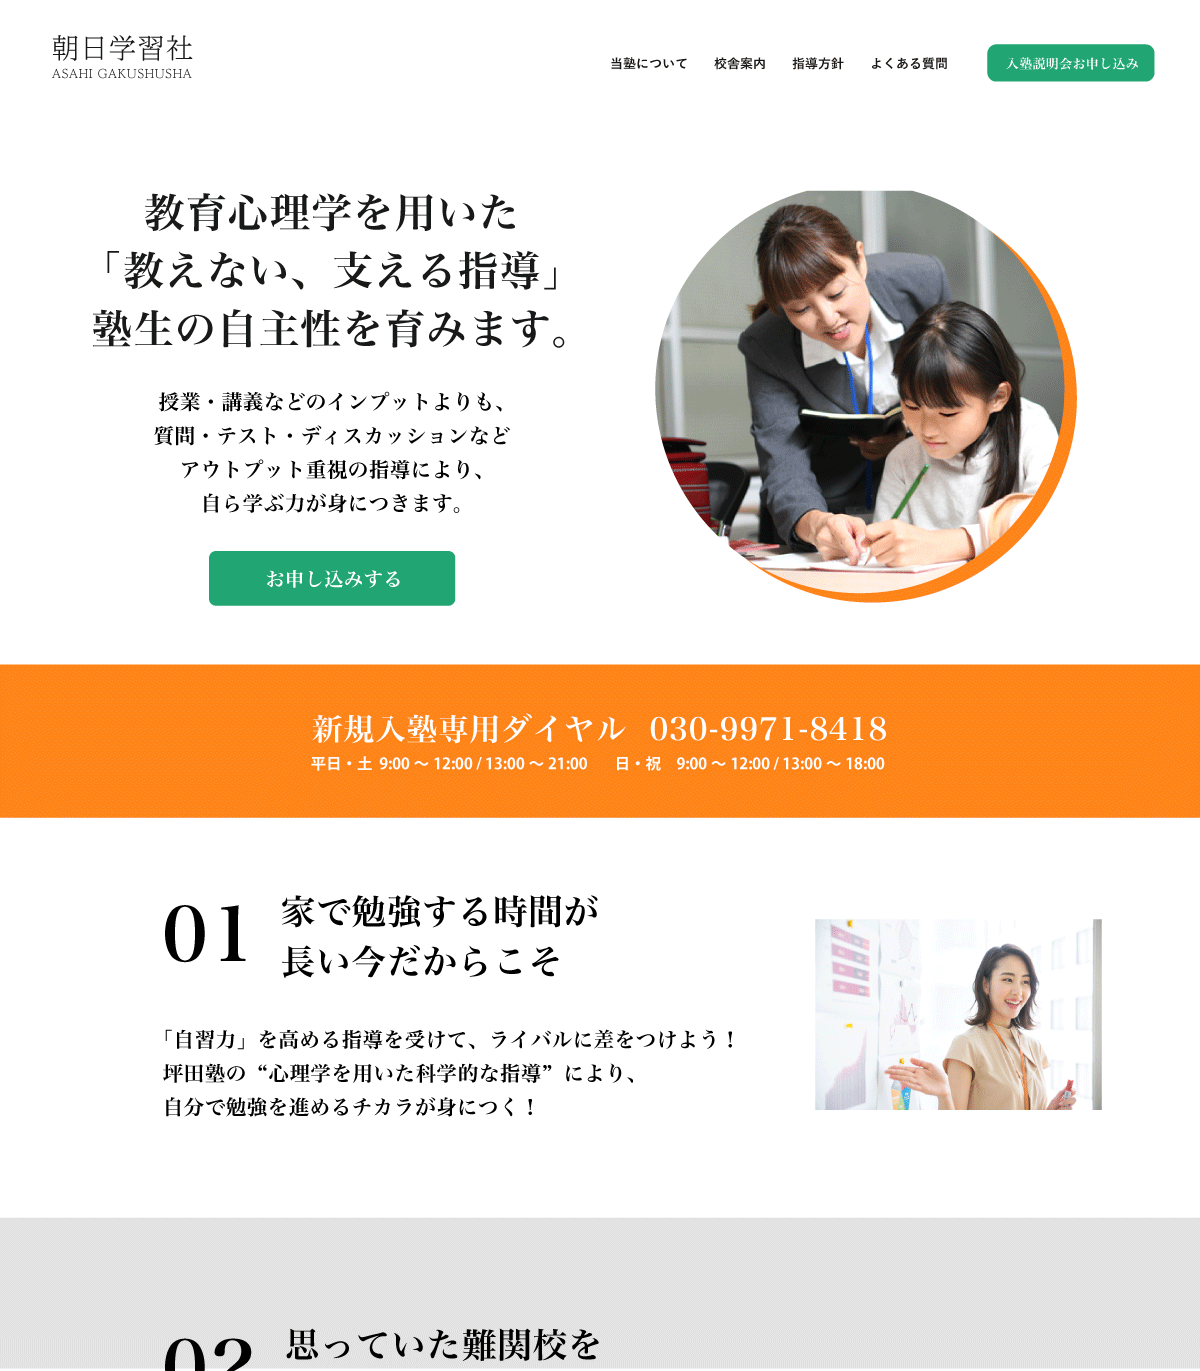 学習塾のホームページ - 教育業のWebデザイン例